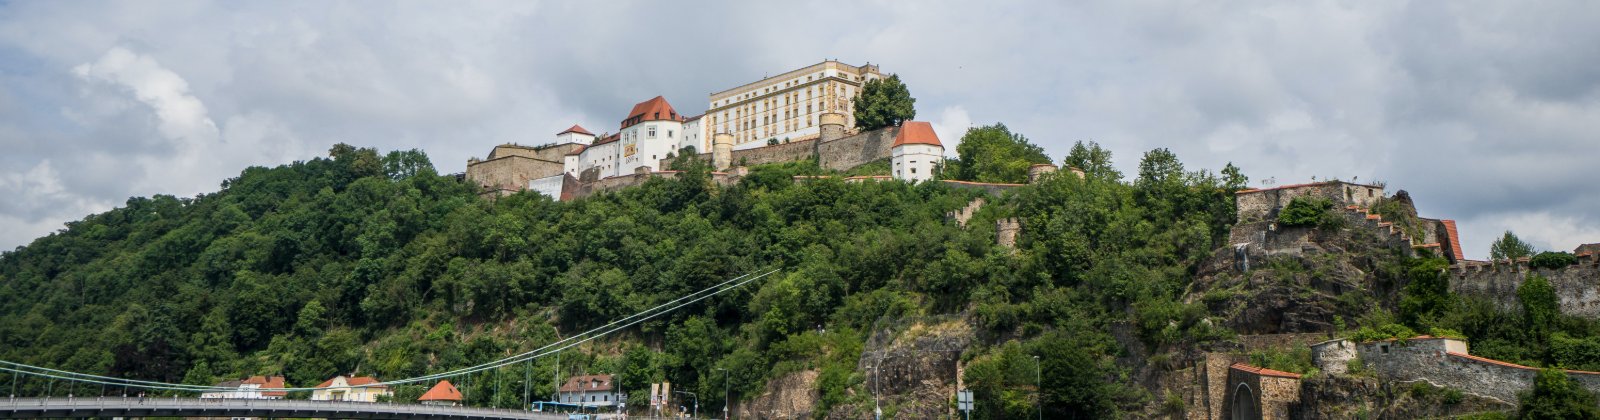 SEO Agentur Passau